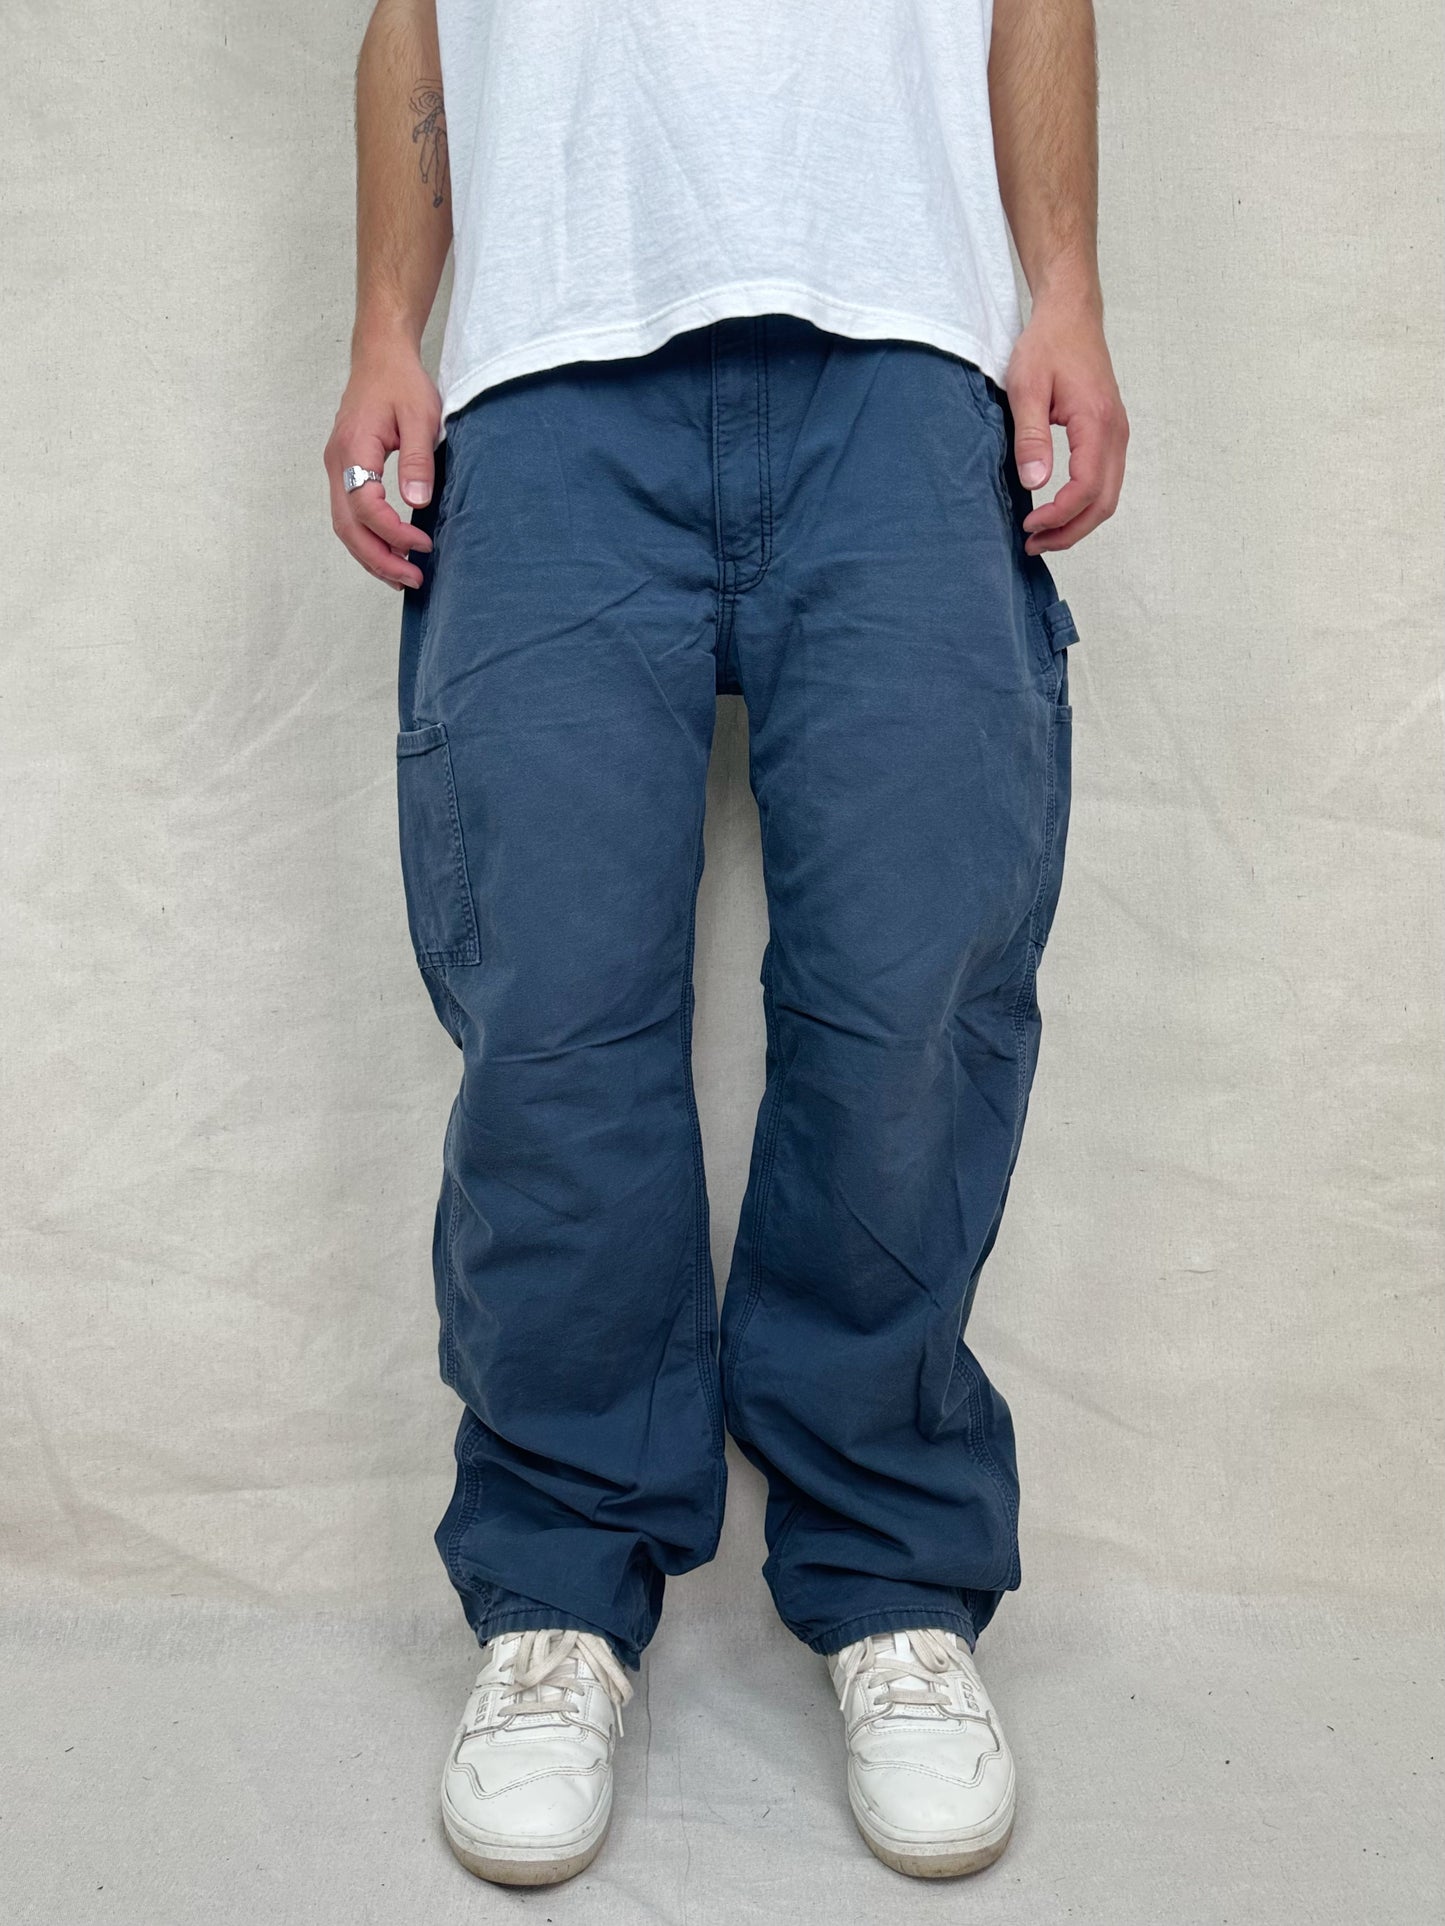 90's Carhartt Vintage Carpenter Pants Size 36x32